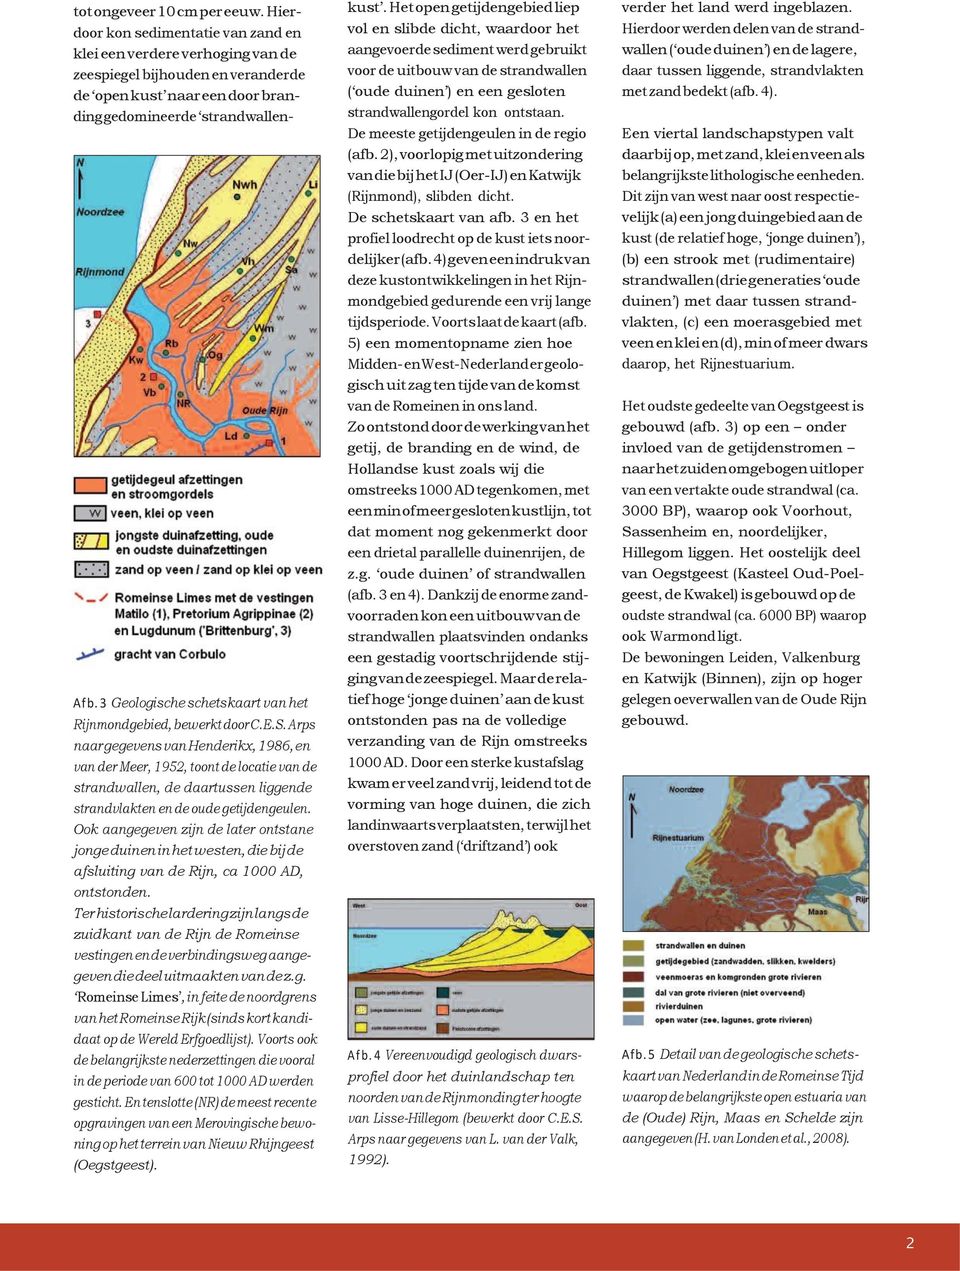 3 Geologische schetskaart van het Rijnmondgebied, bewerkt door C.E.S.